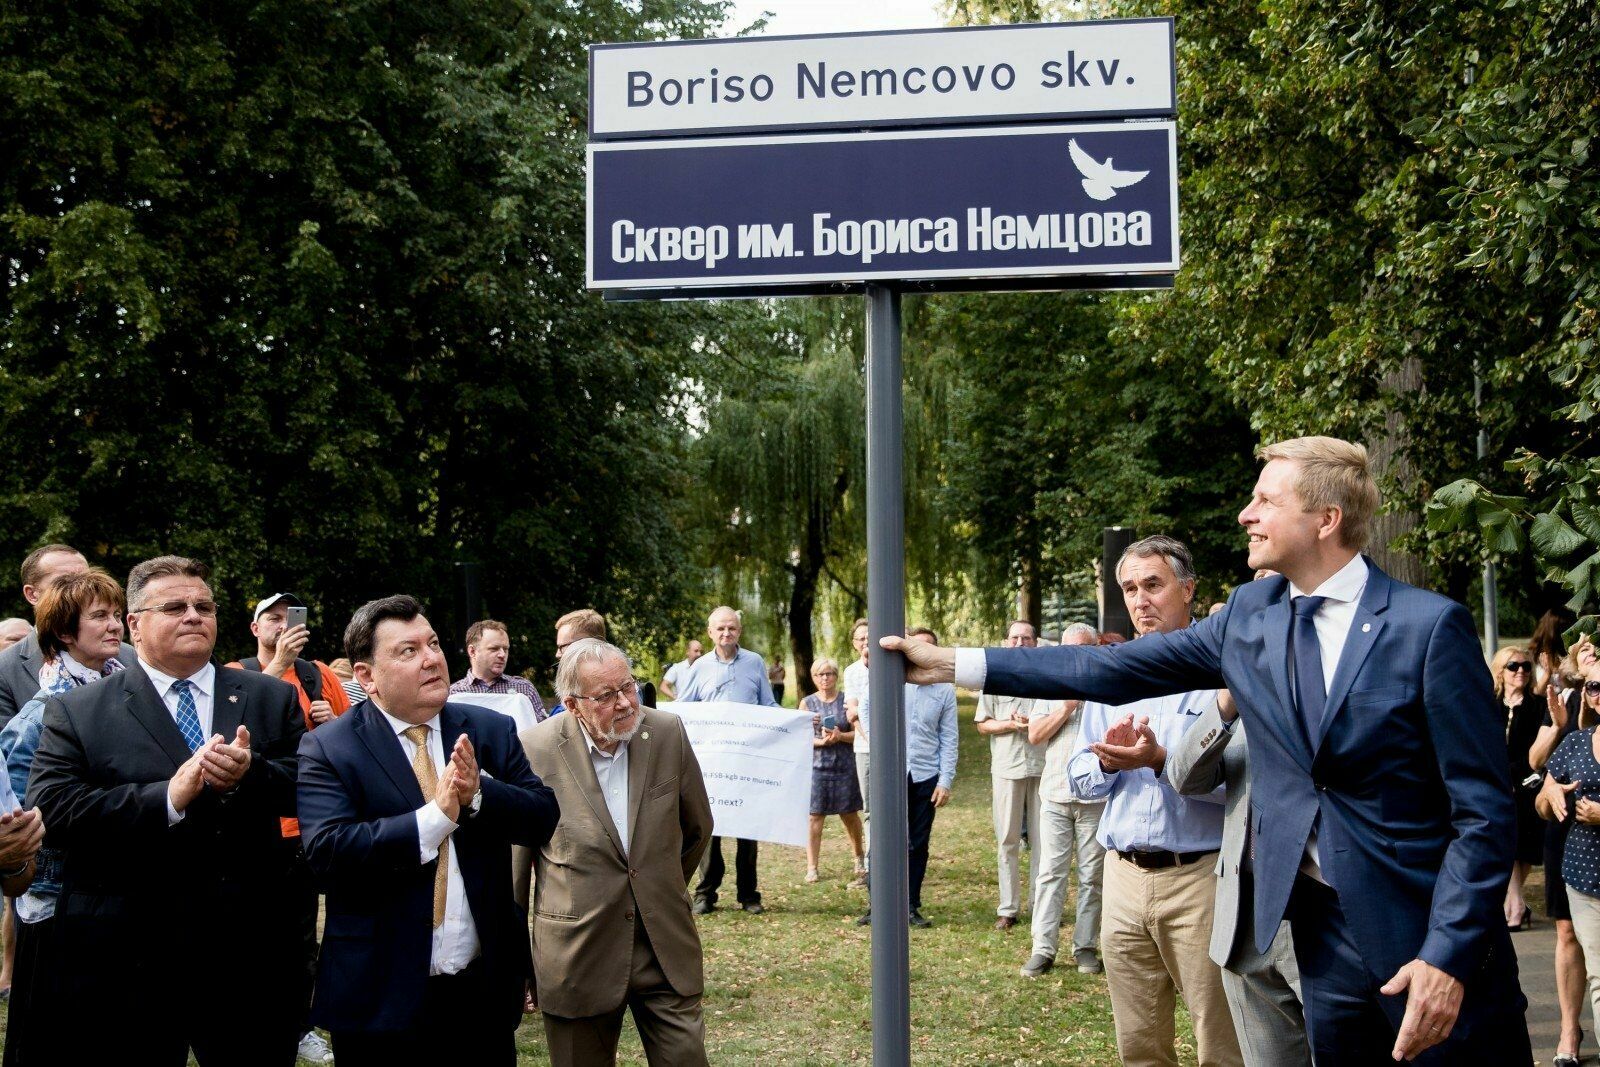 Сквер Бориса Немцова в Вильнюсе рассорил российских демократов